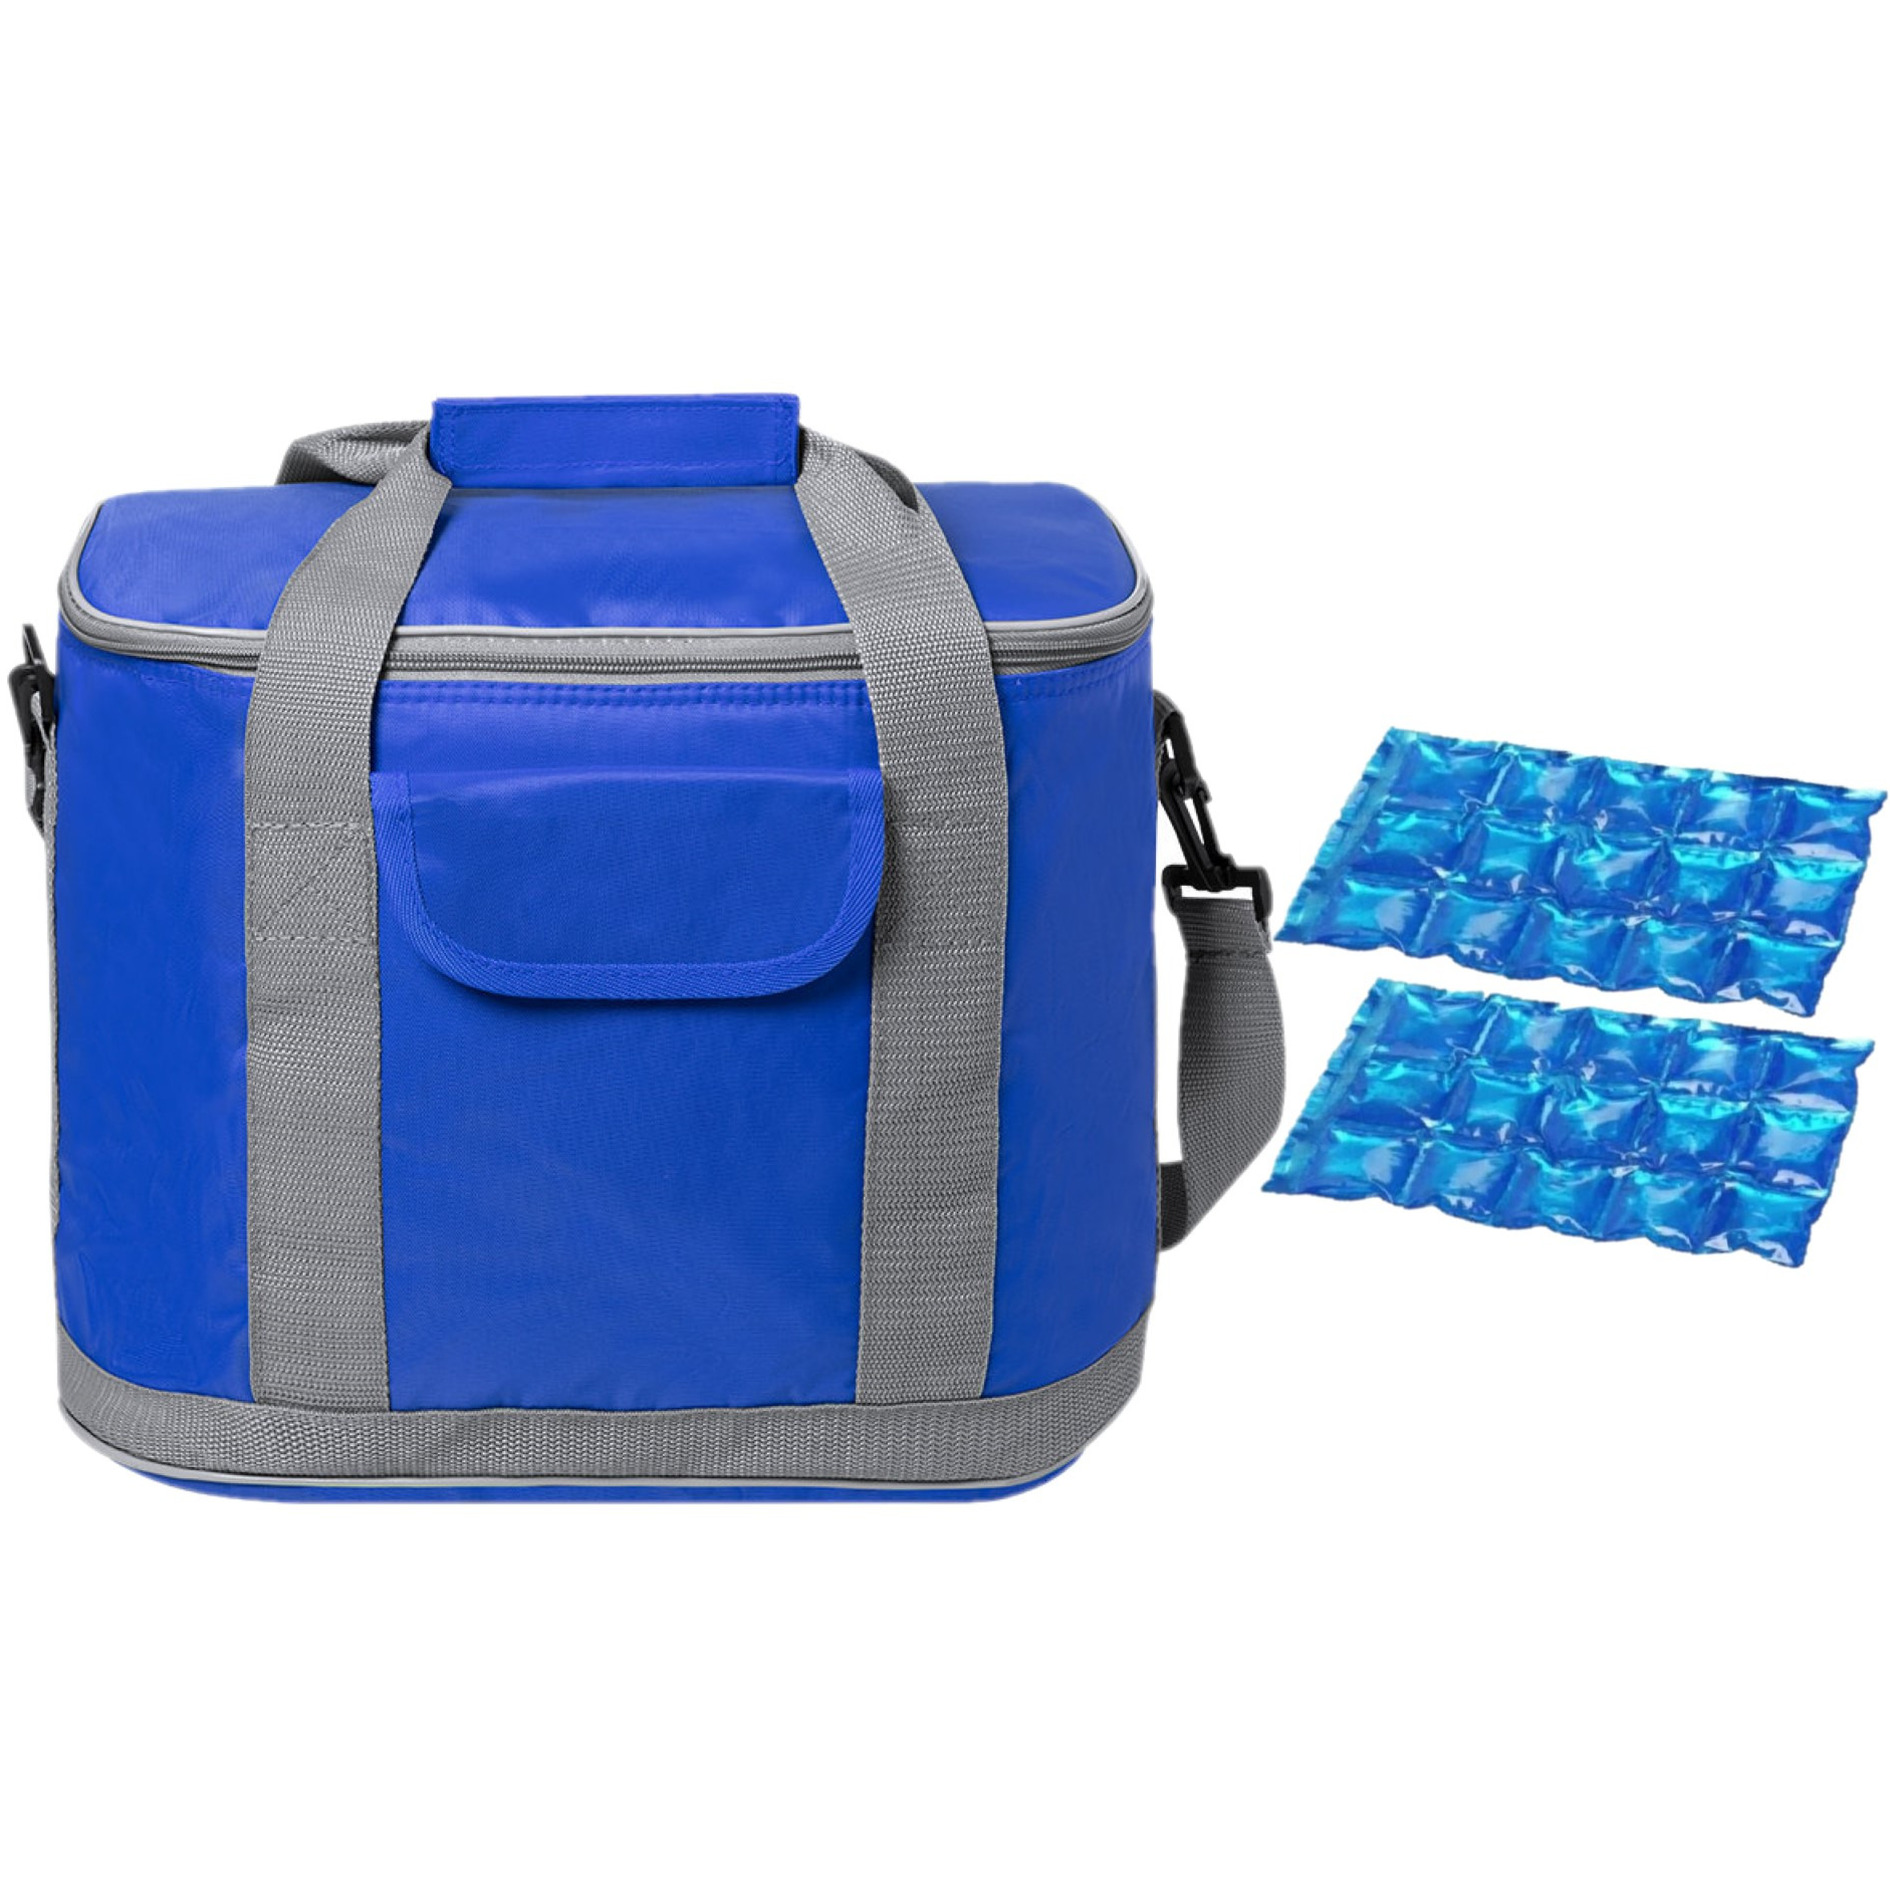 Grote koeltas draagtas-schoudertas blauw met 2 stuks flexibele koelelementen 22 liter